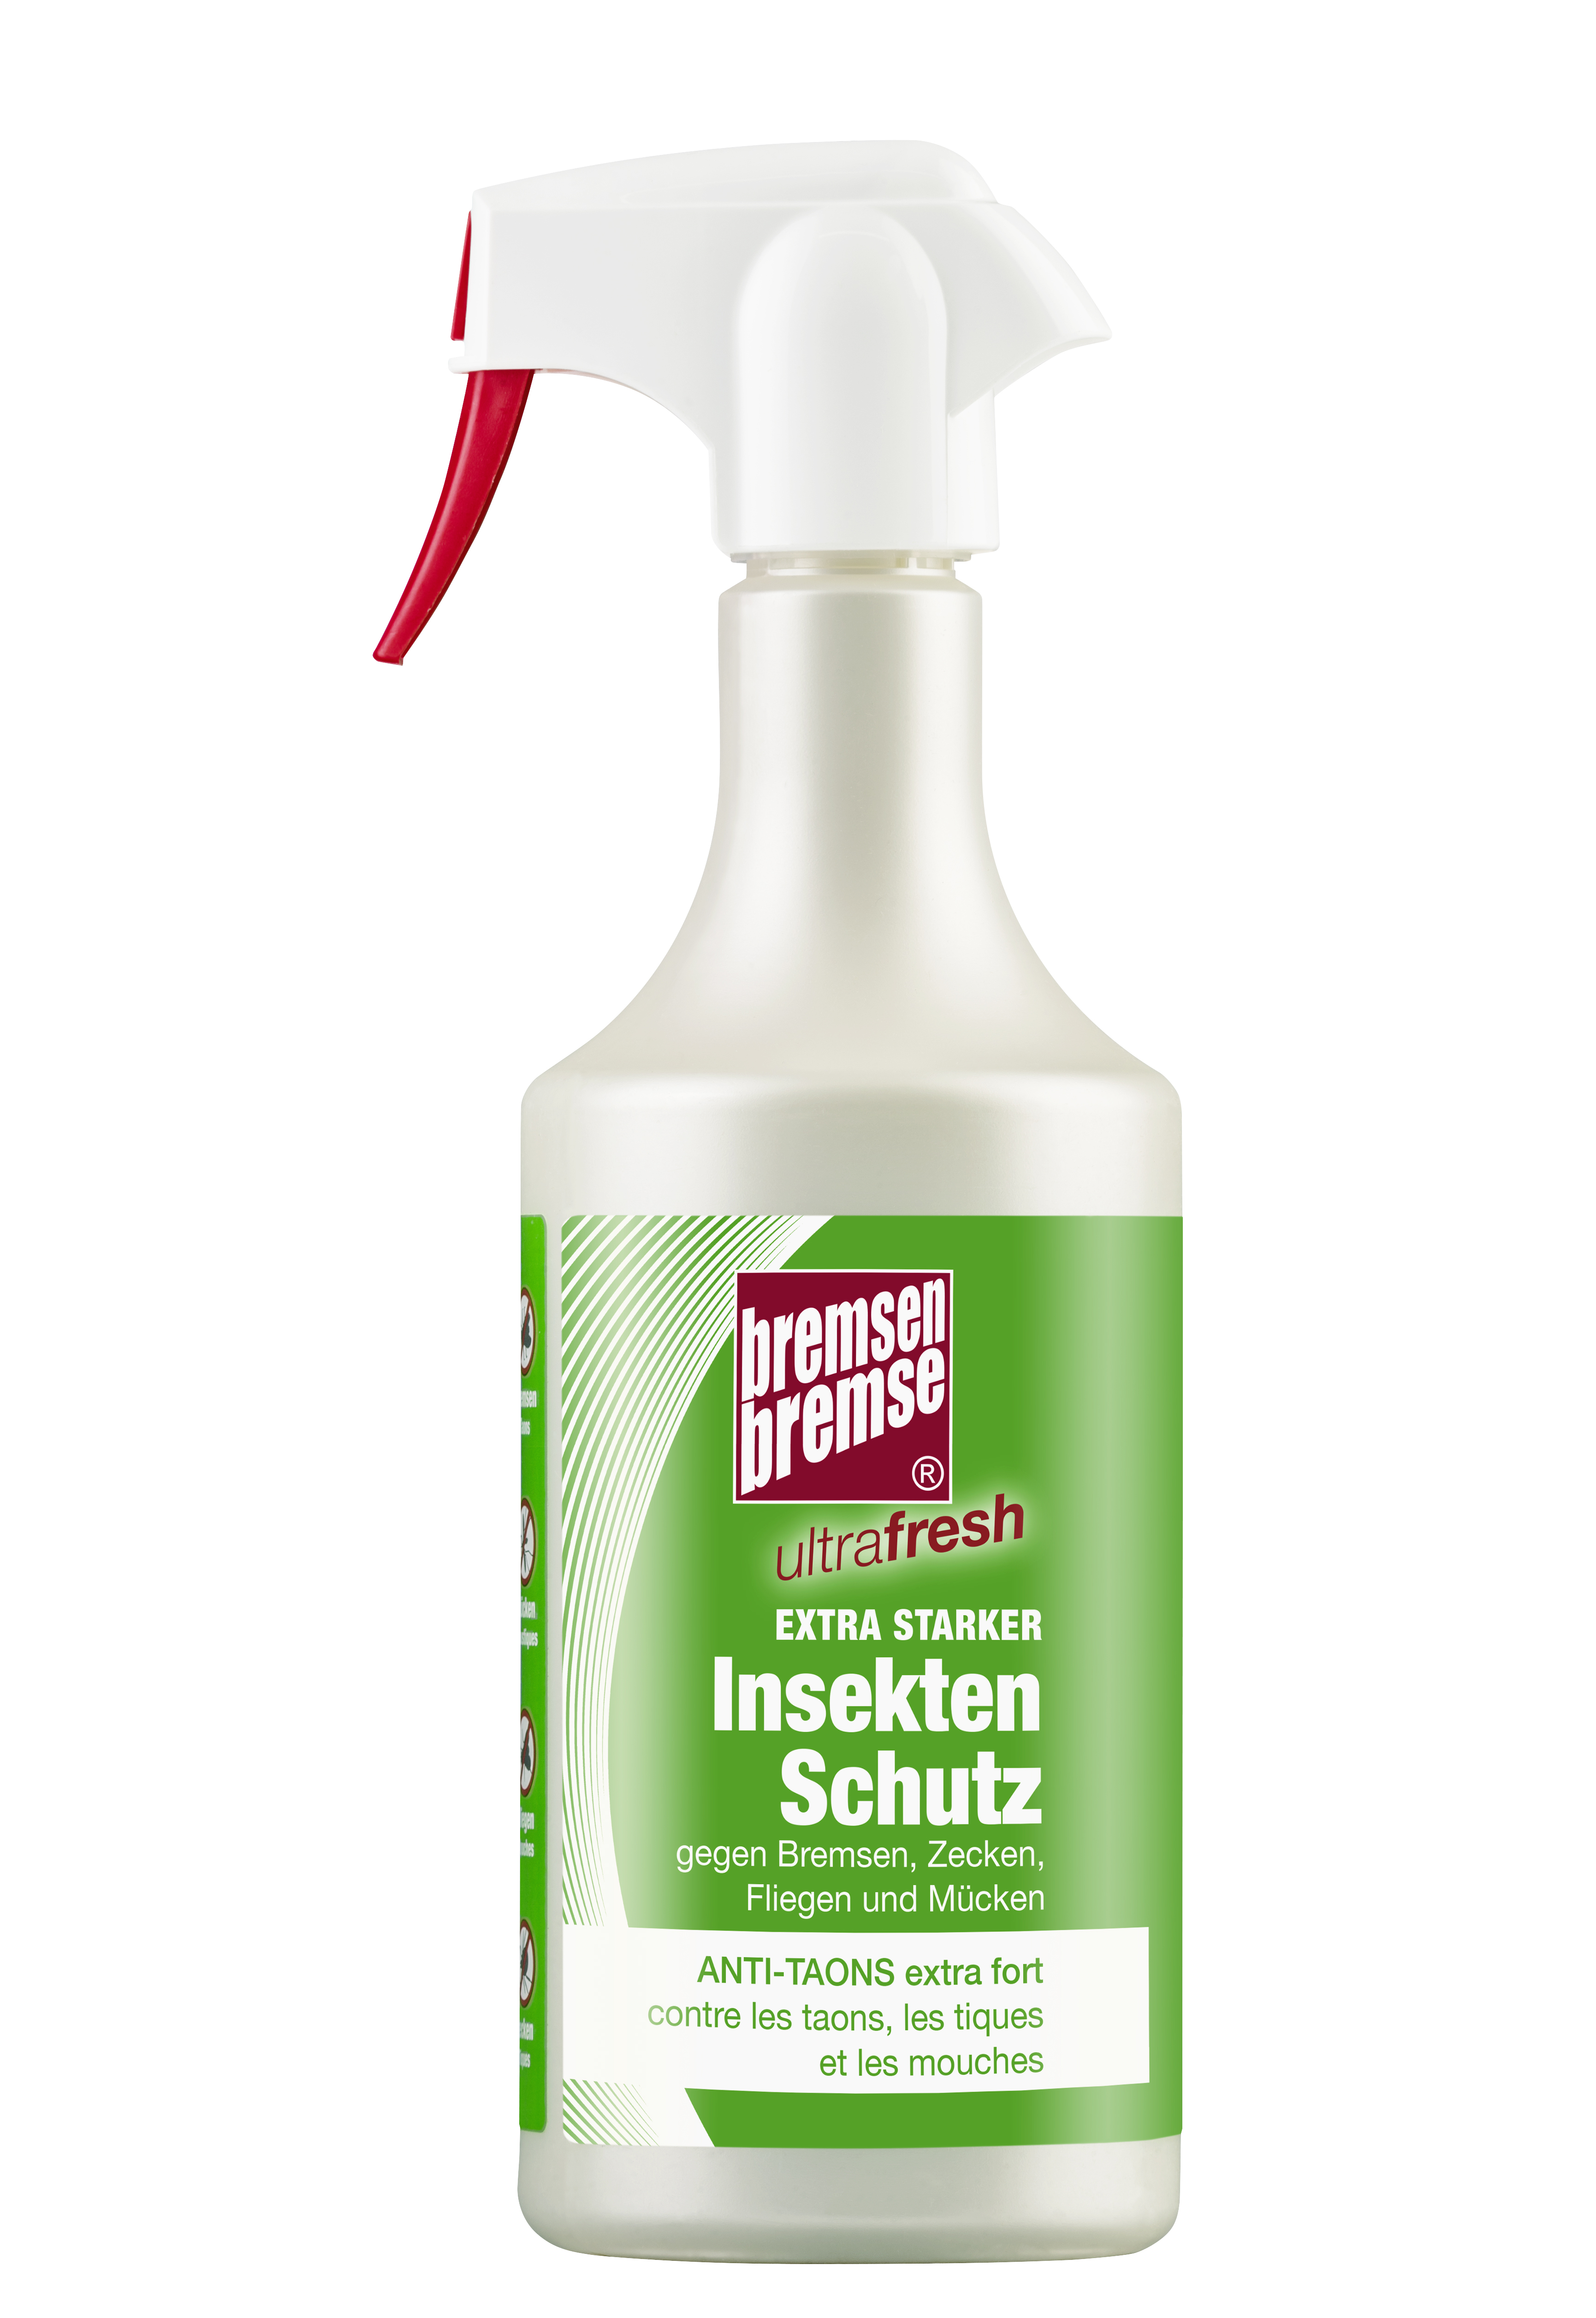 Zedan Bremsen-Bremse Ultrafresh 750ml Sprühflasche